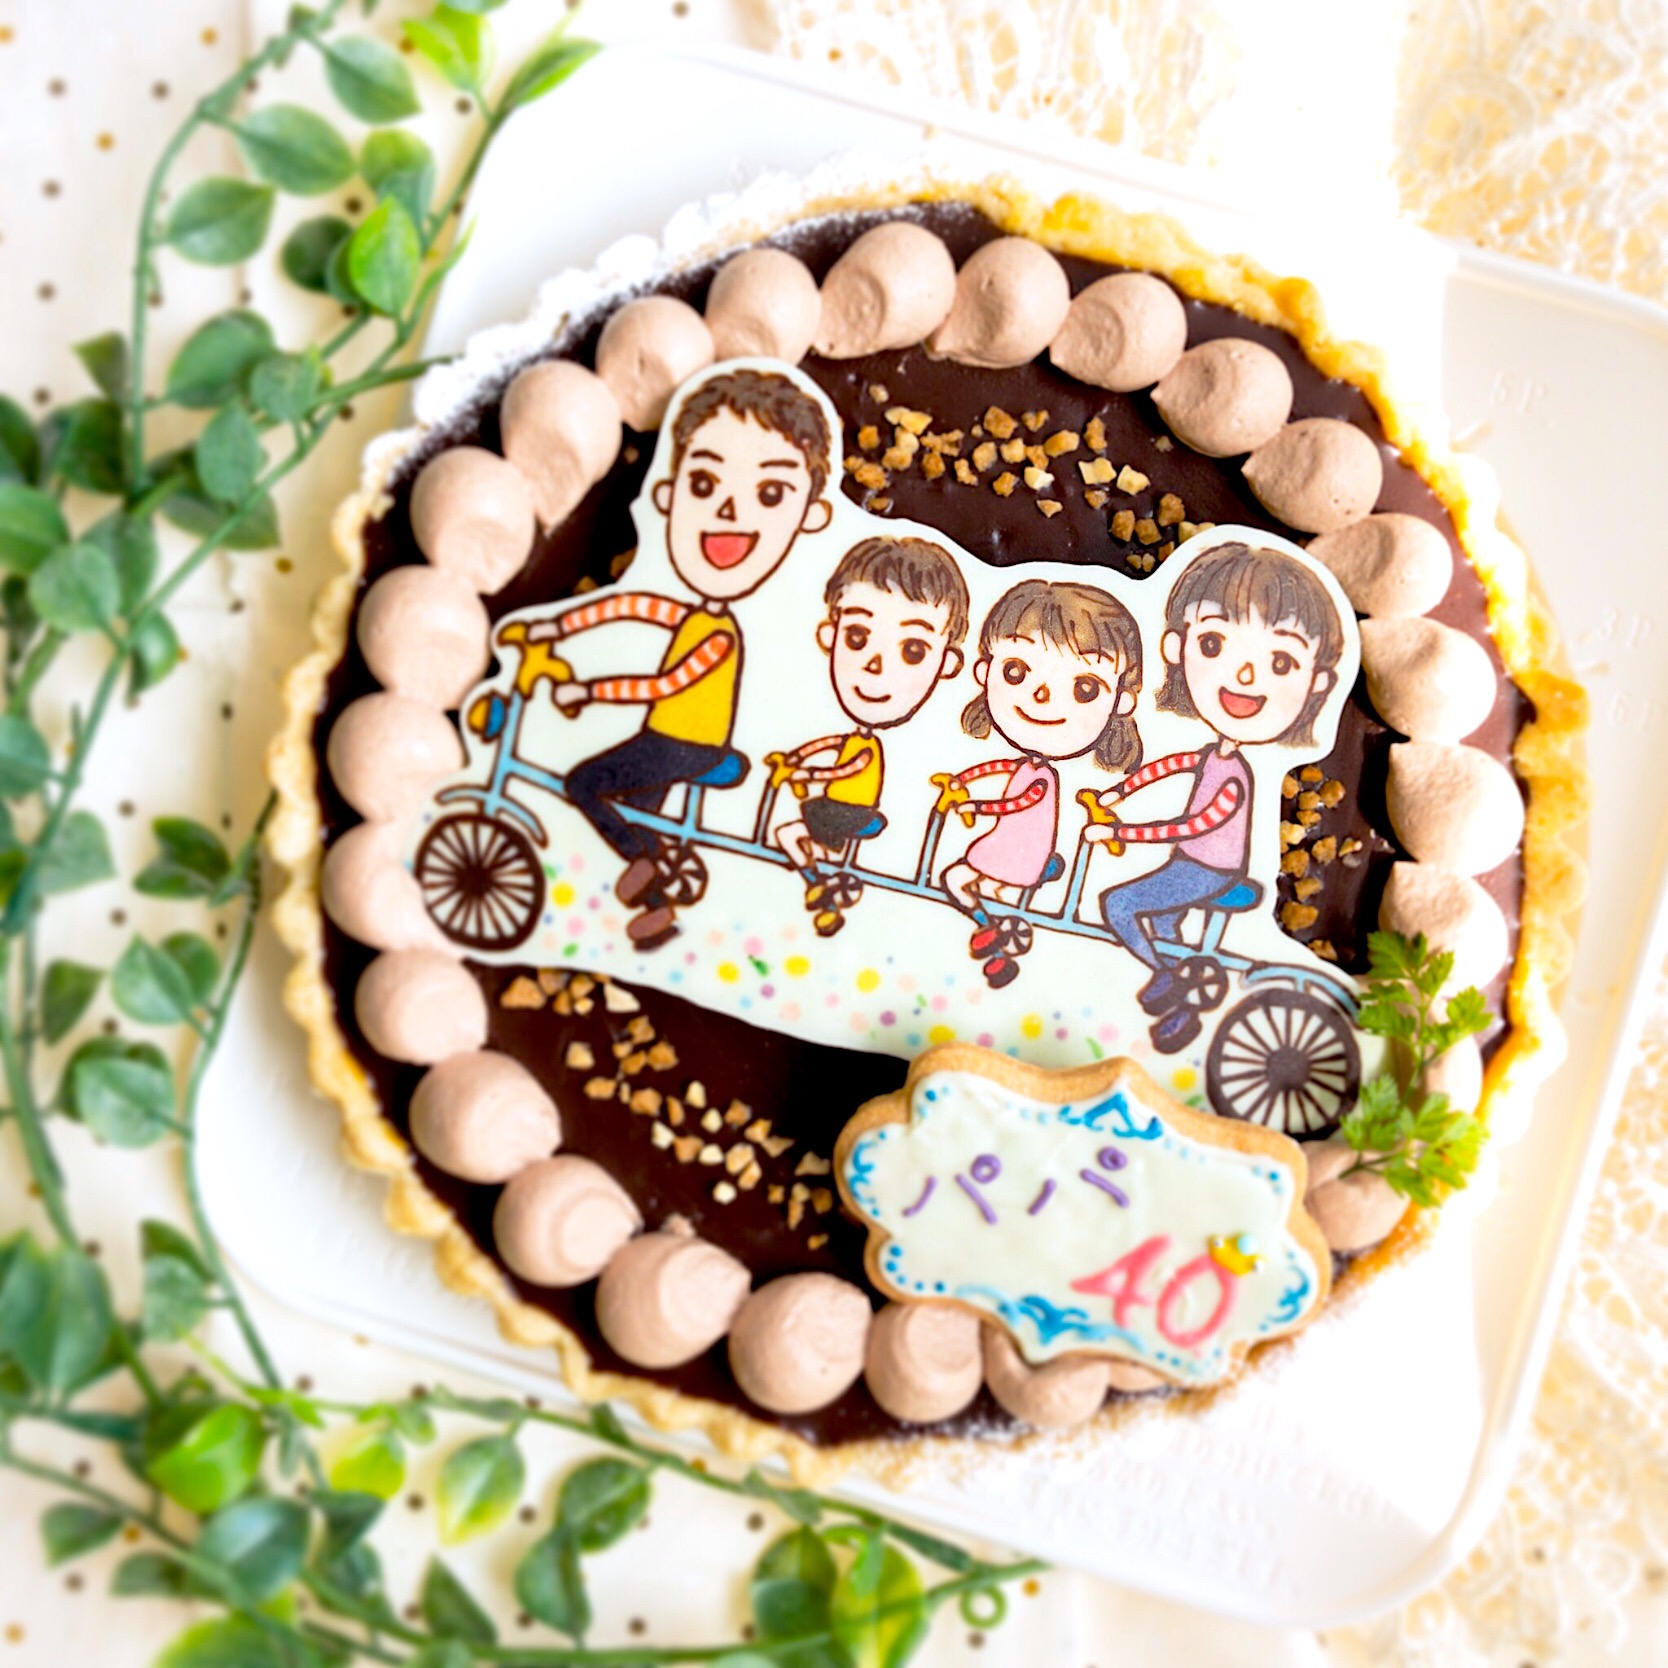 イラスト入りケーキが大人気 誕生日をかわいくお祝いしよう Macaroni